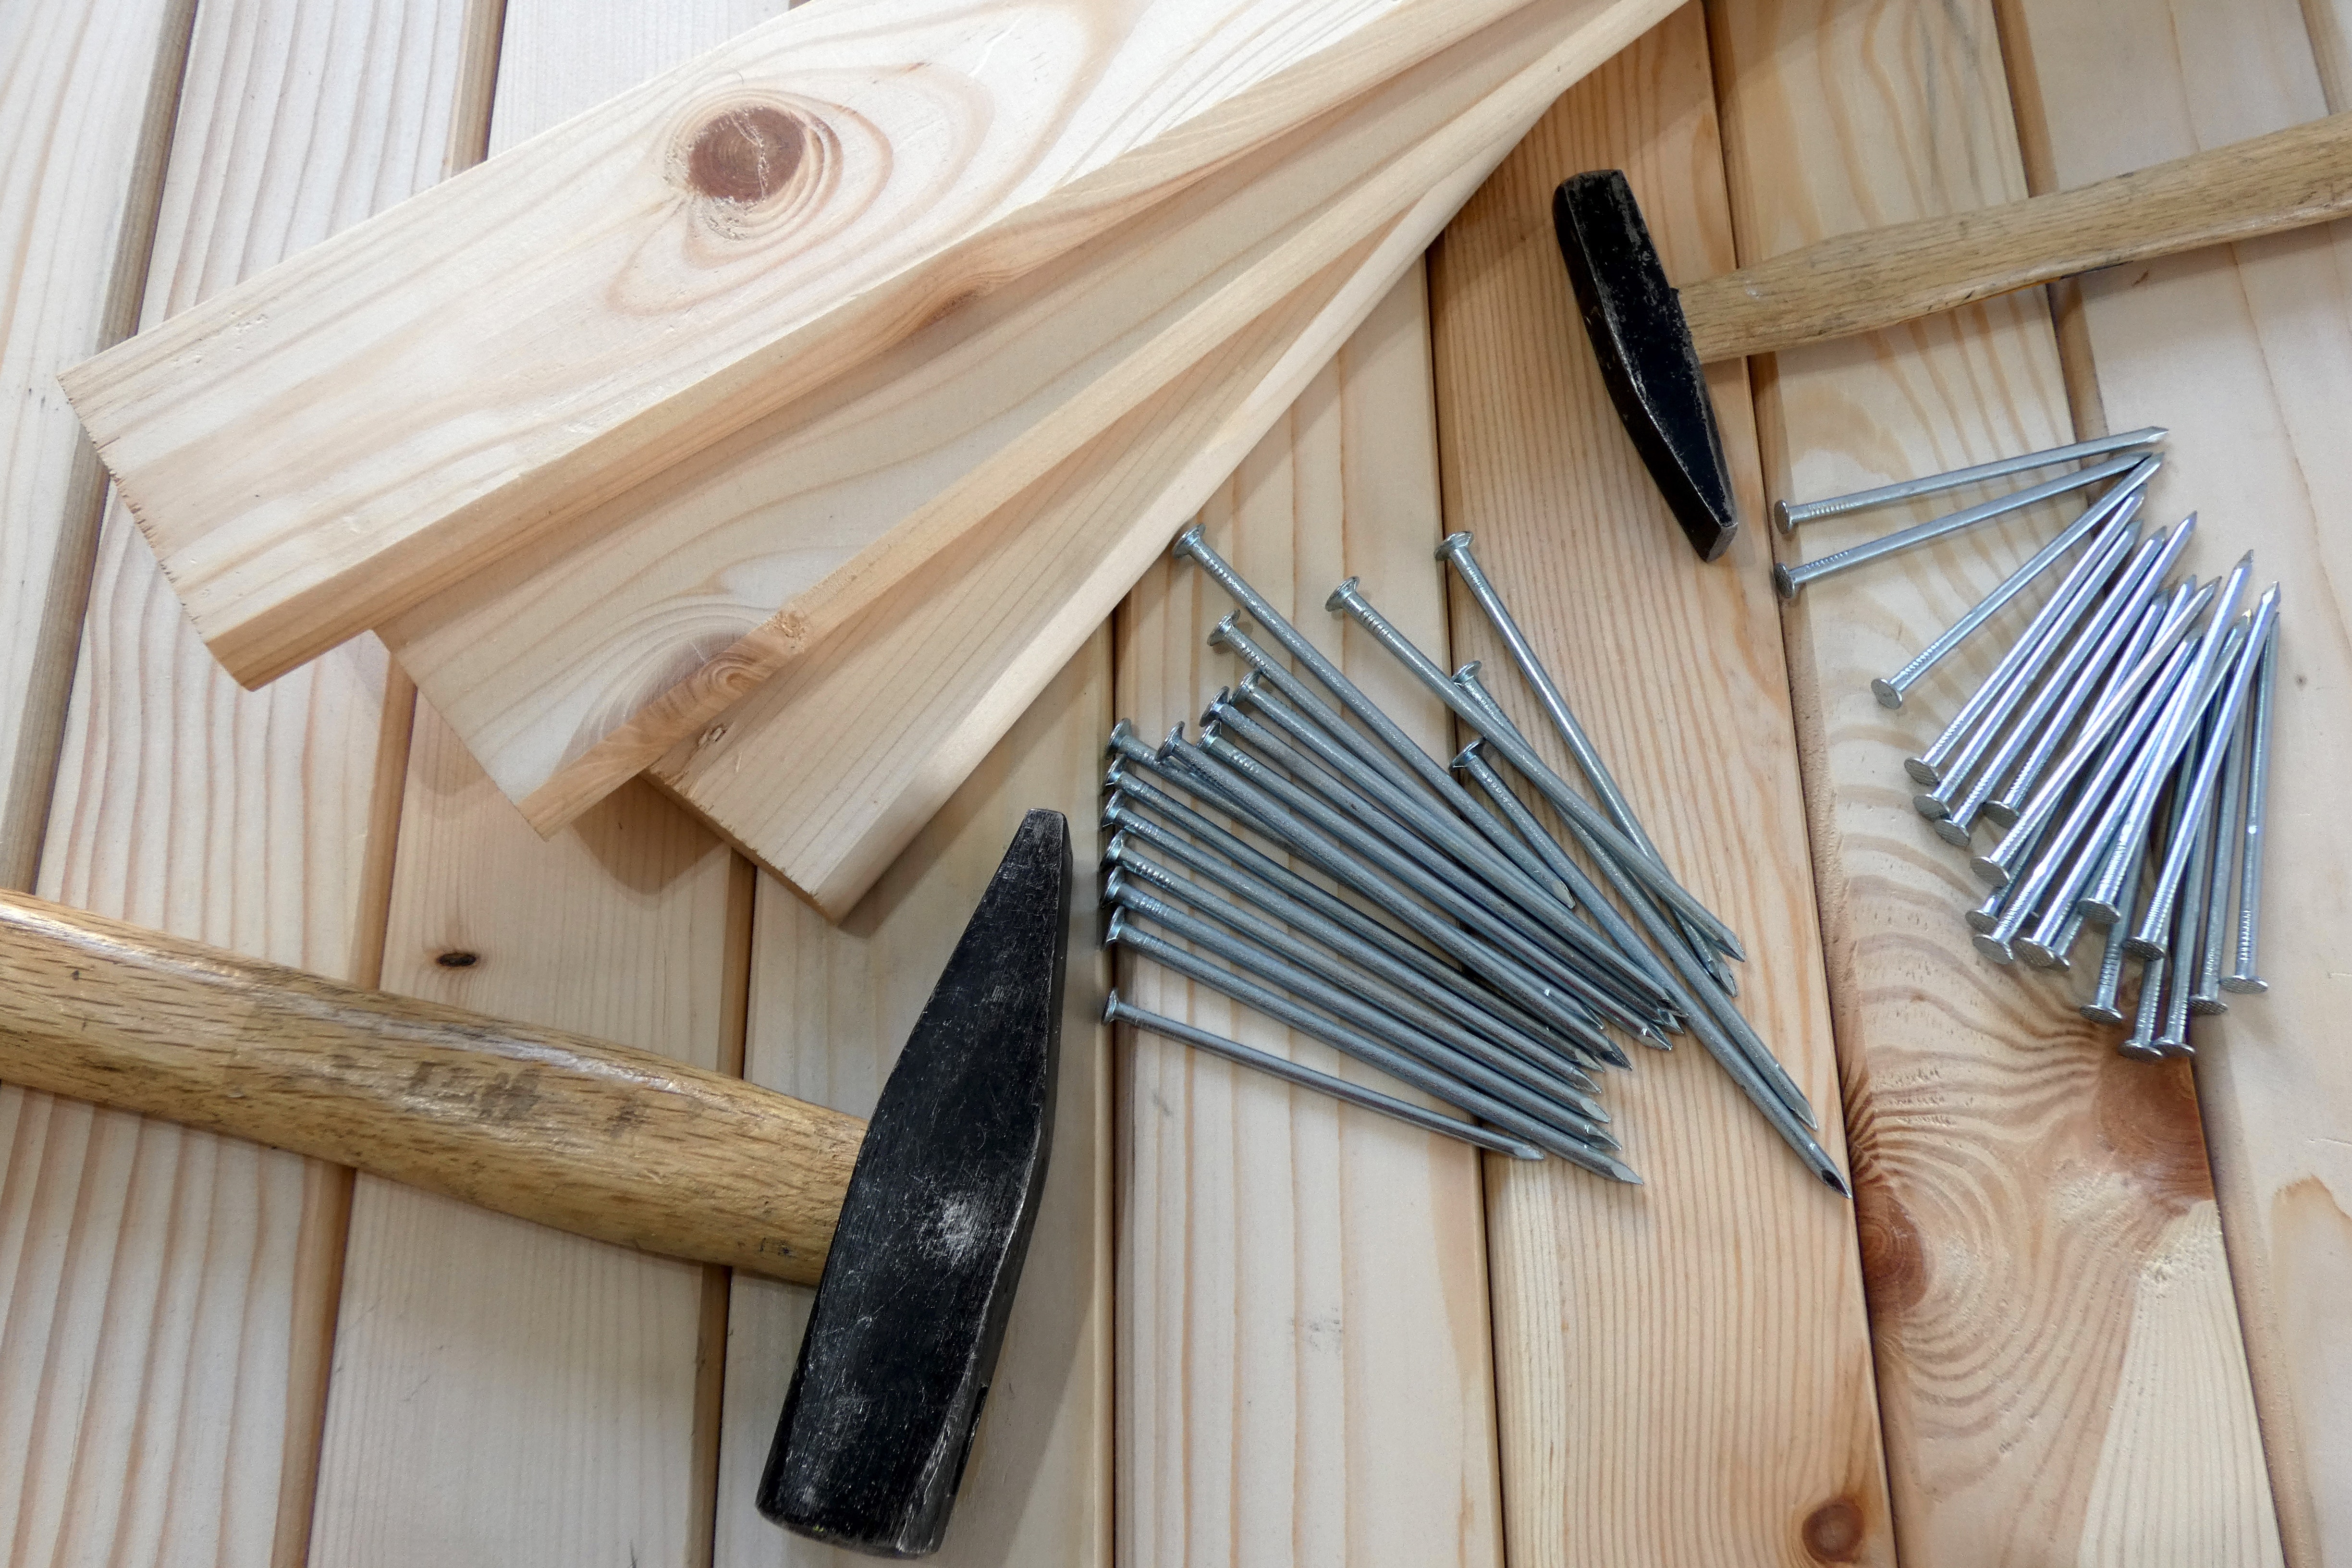 wood, hammer, and nails